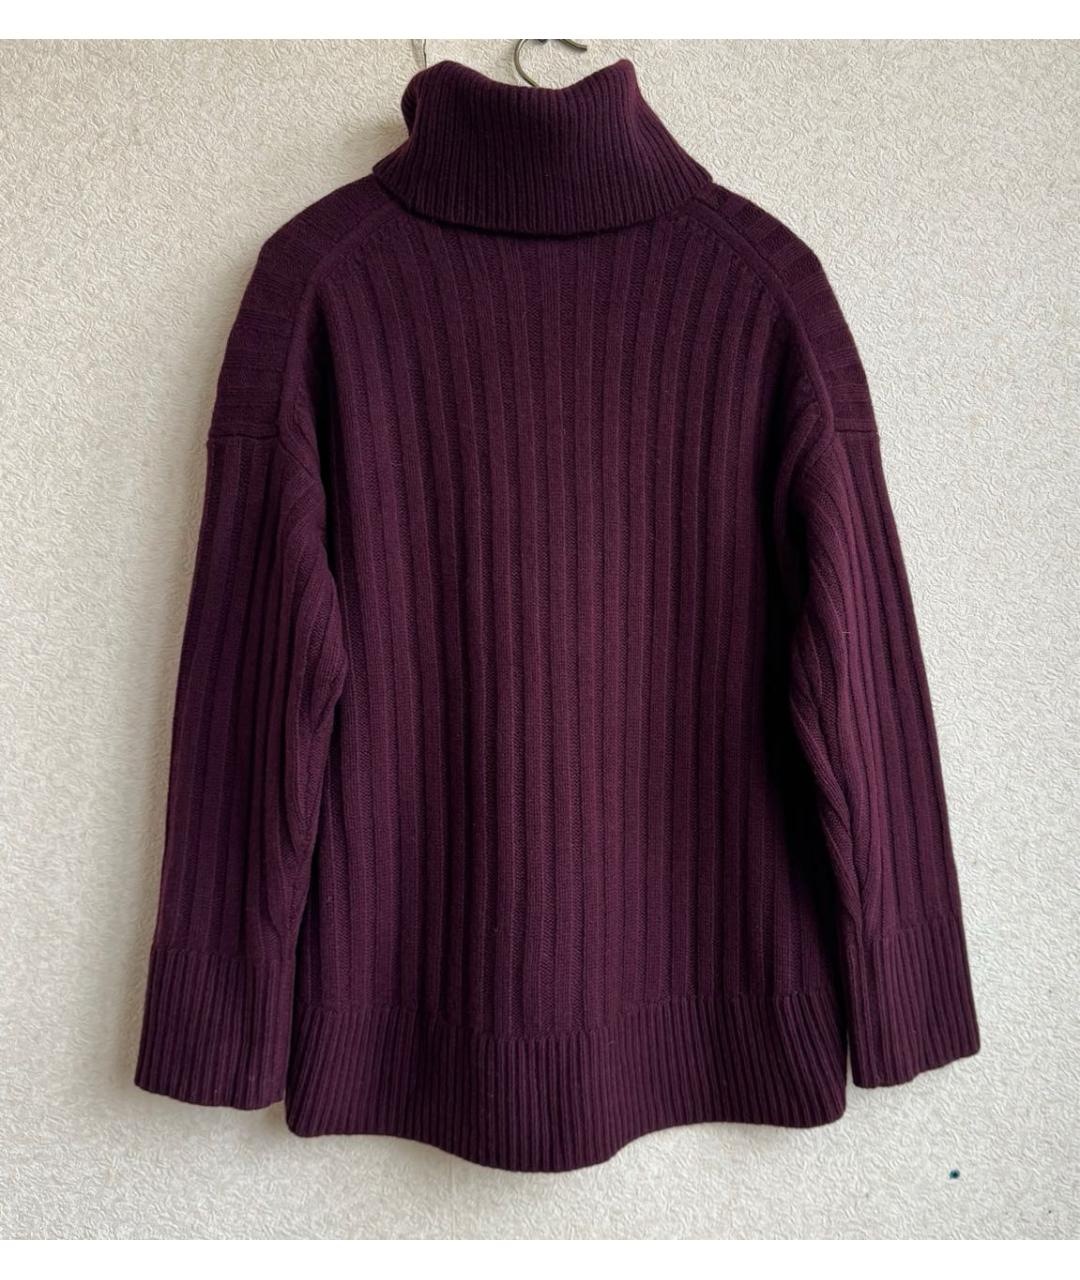 POLO RALPH LAUREN Бордовый шерстяной джемпер / свитер, фото 2